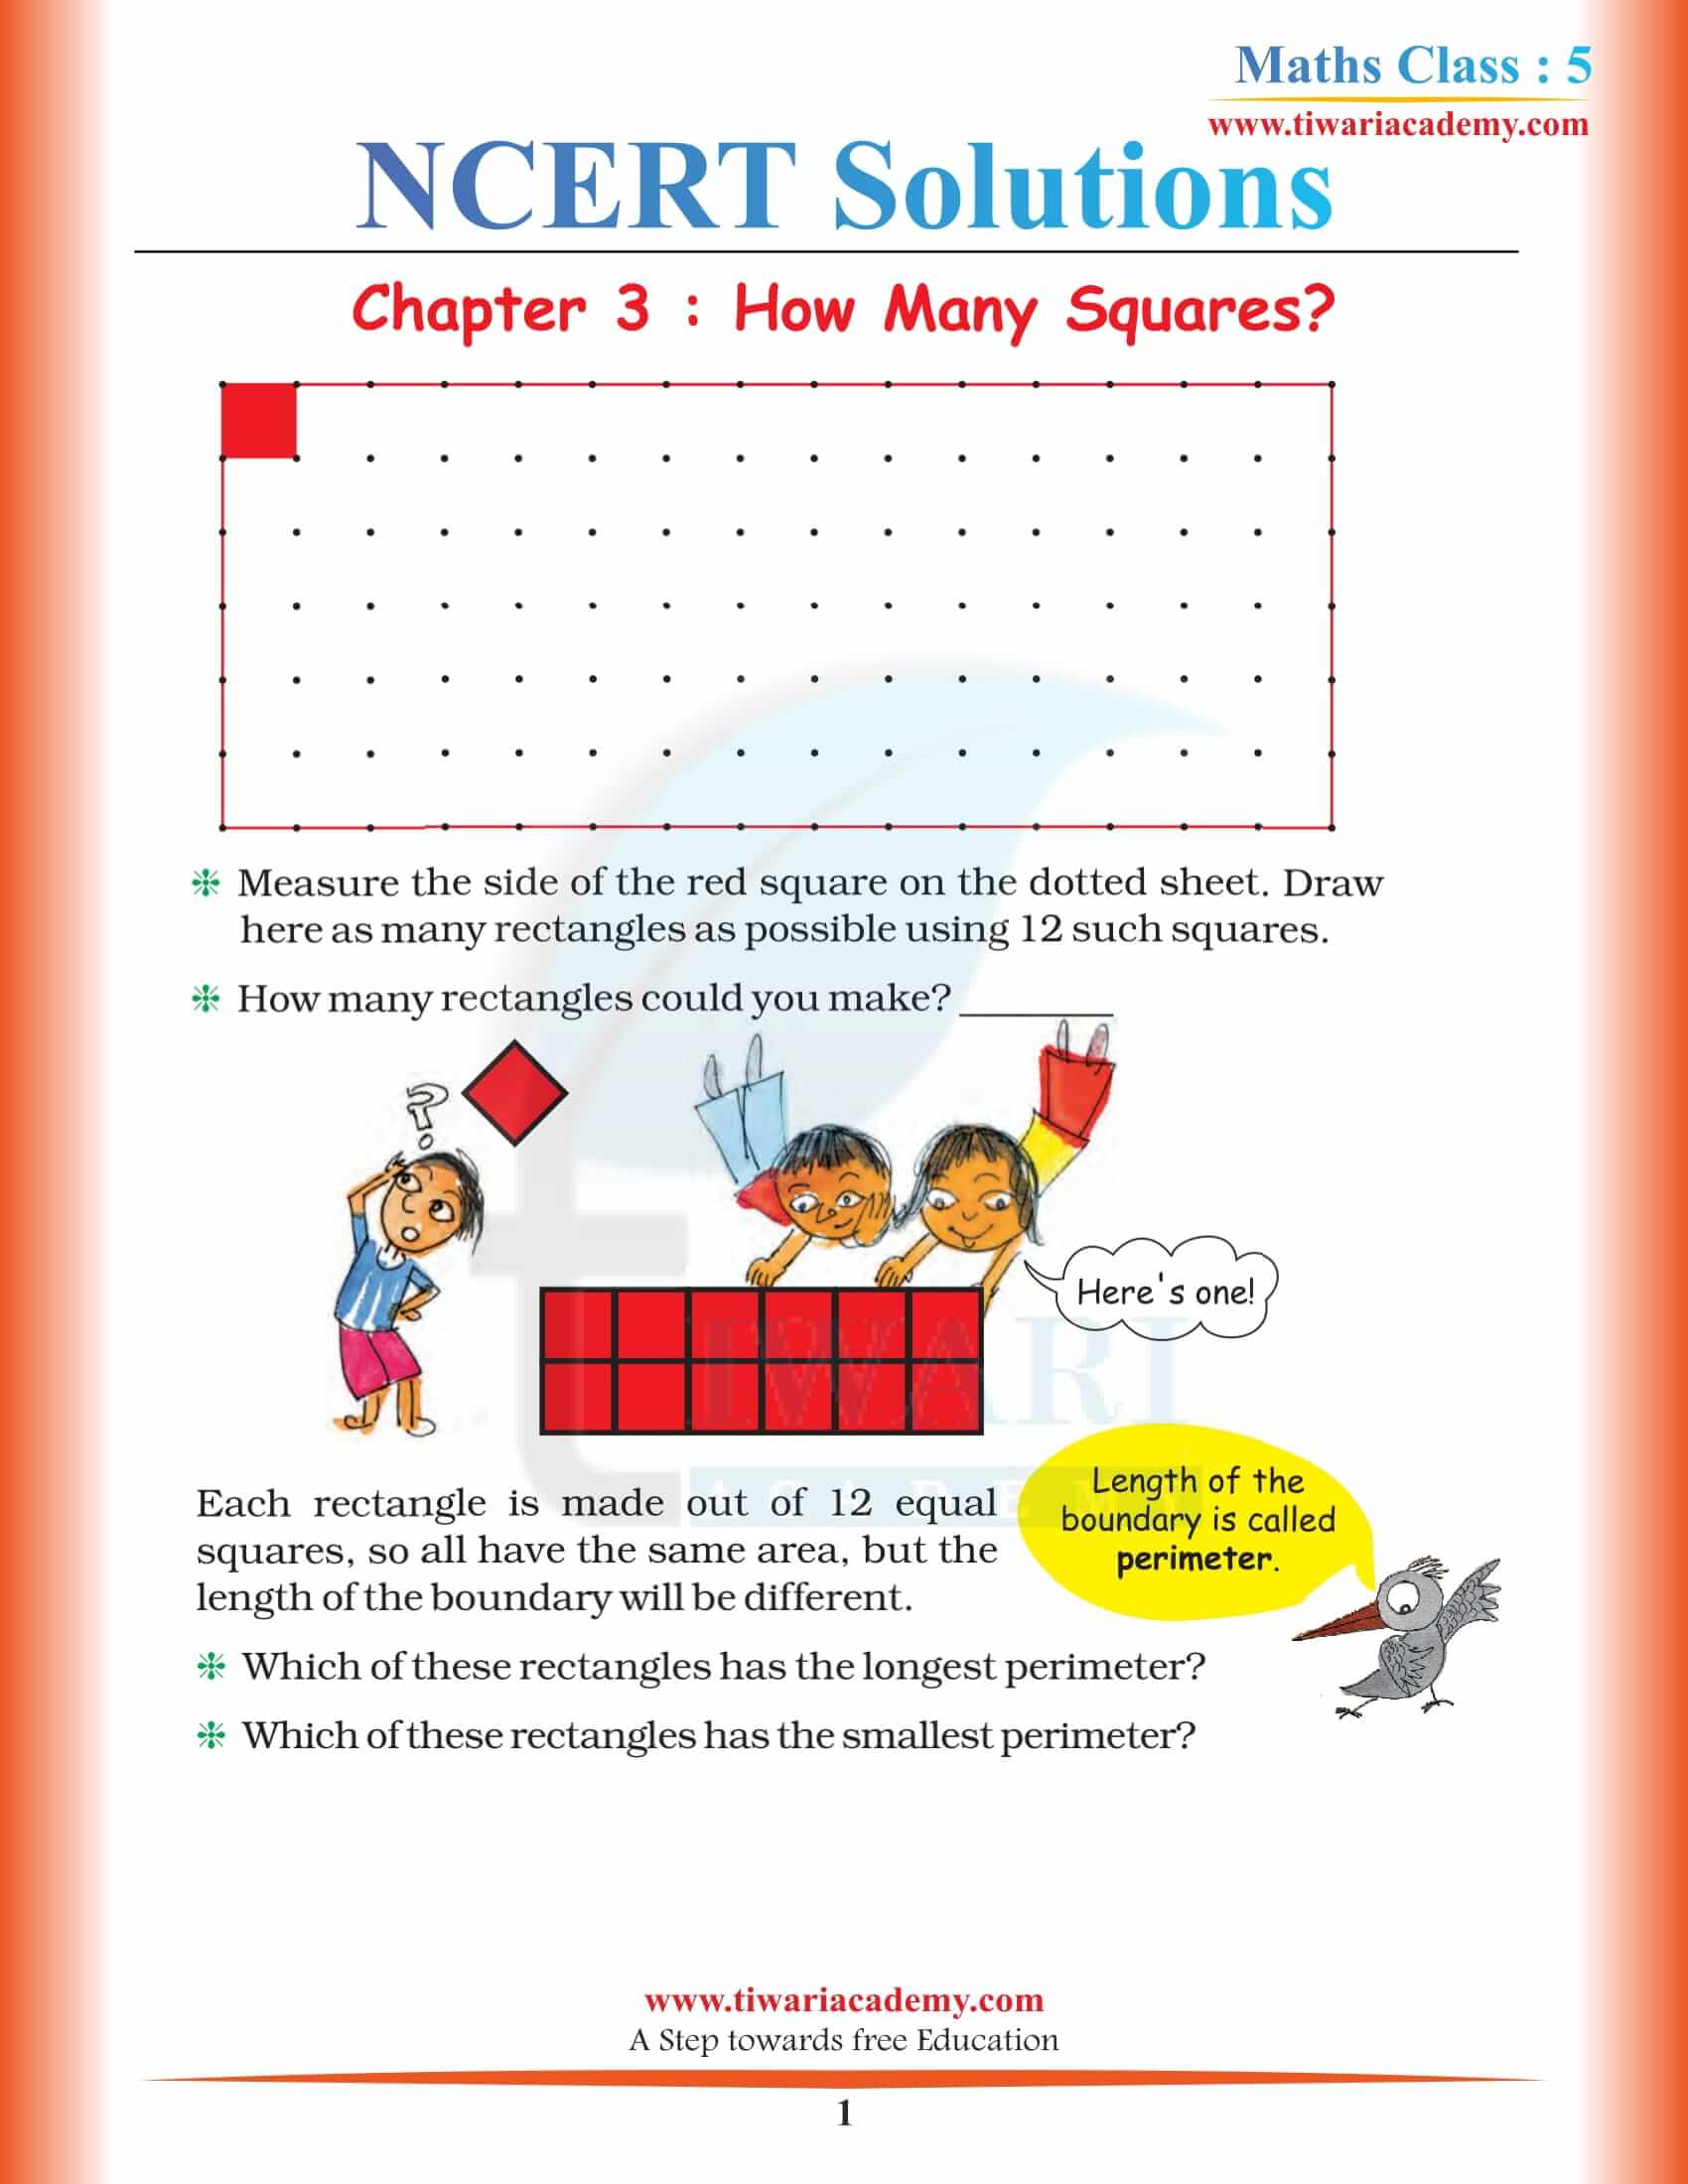 NCERT Solutions for Class 5 Maths Chapter 3